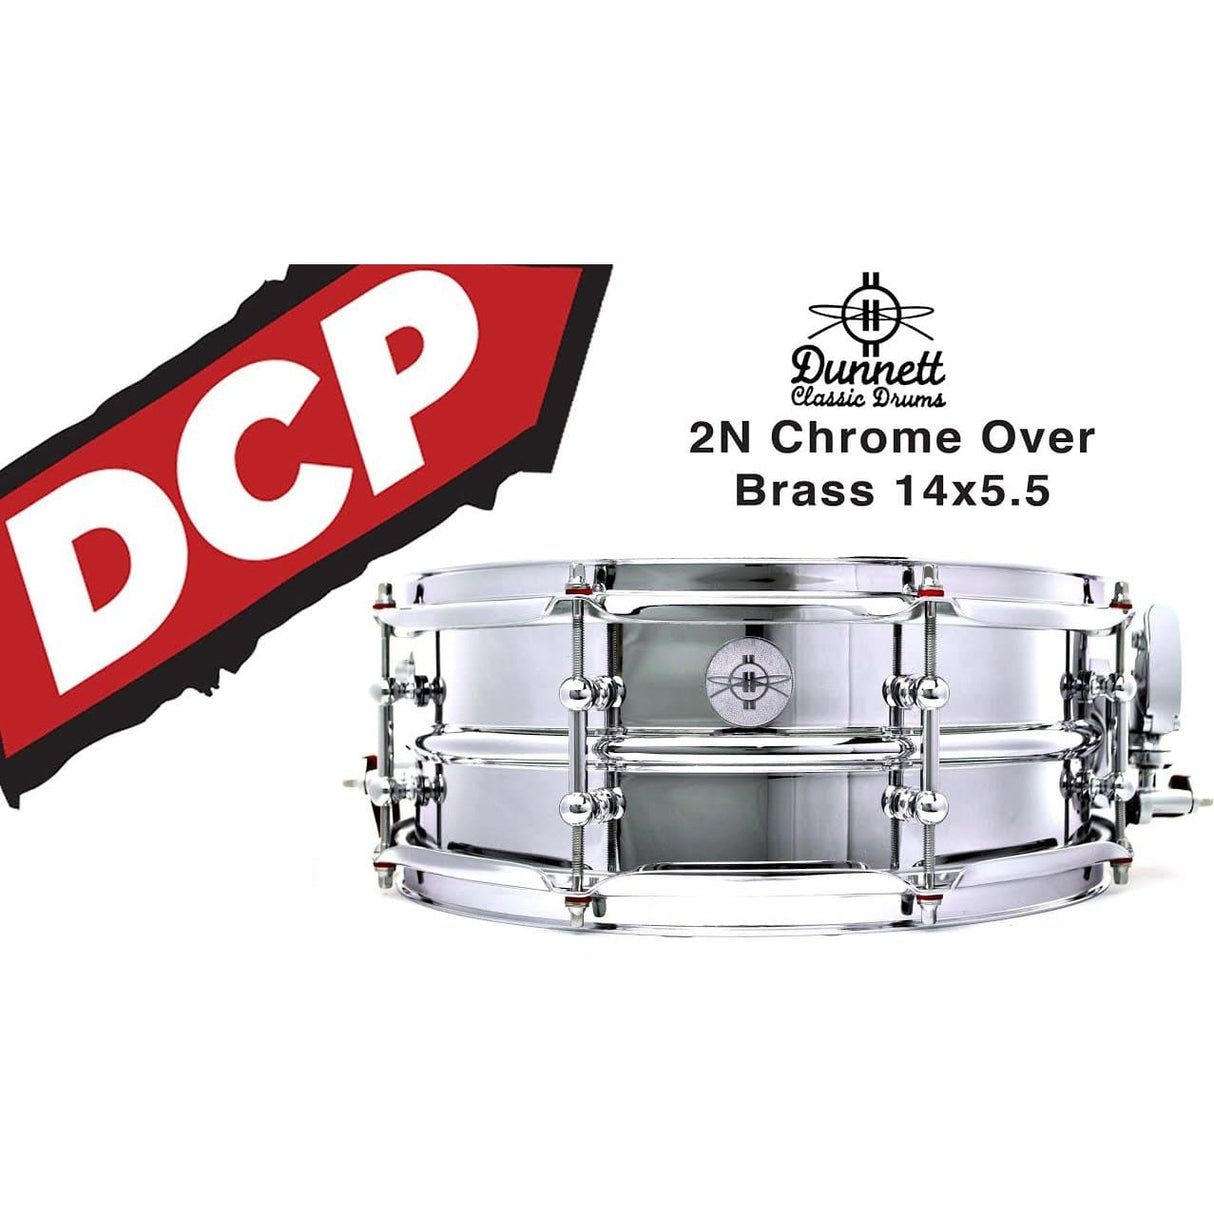 Dunnett Classic 2N Chrome Over Brass Snare Drum 14x5.5